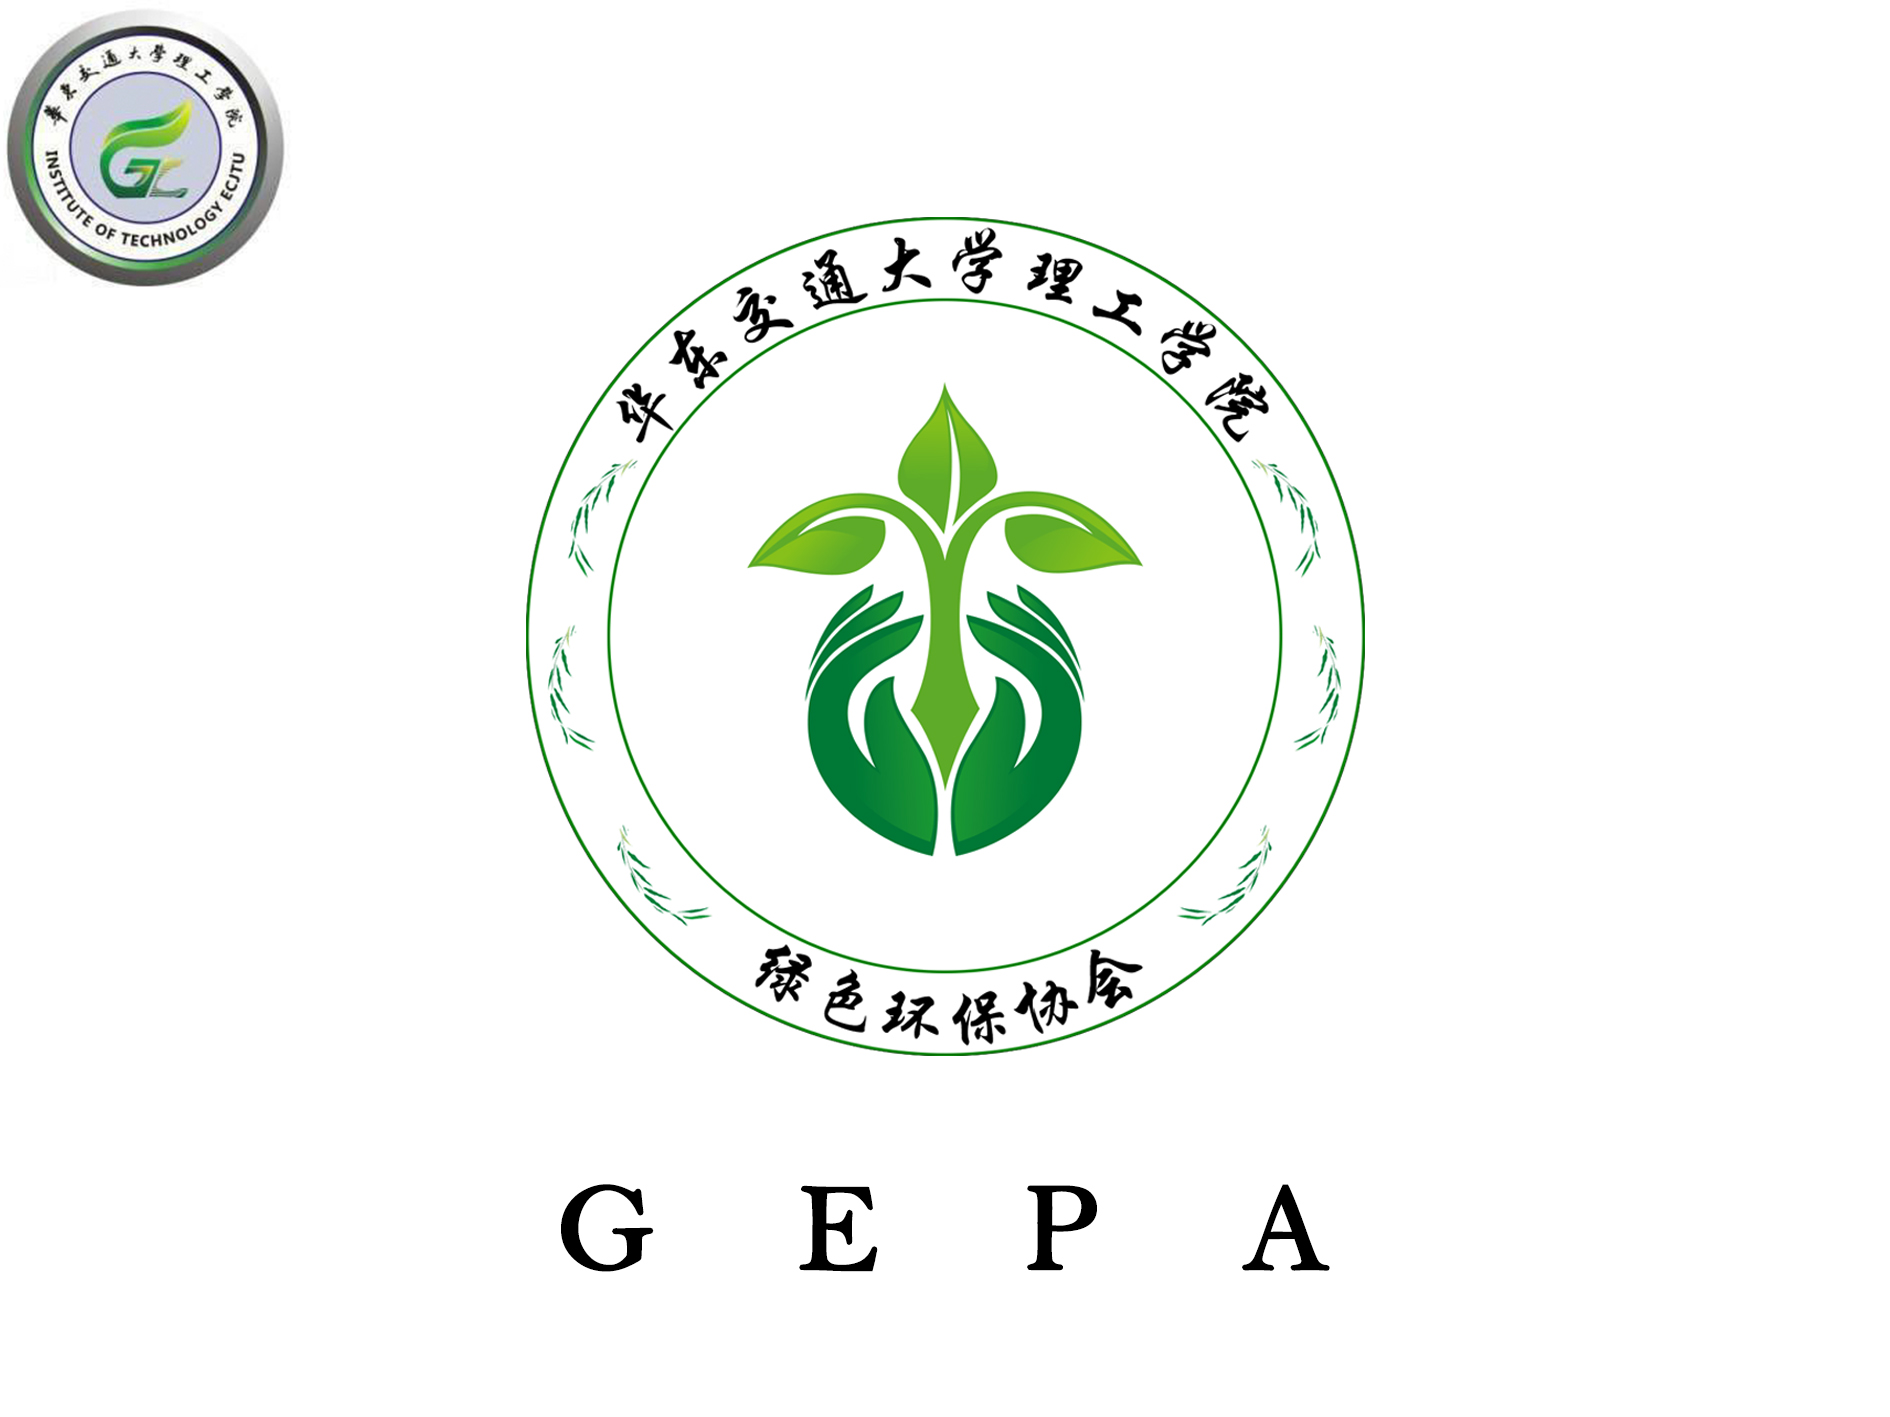 華東交通大學理工學院綠色環保協會